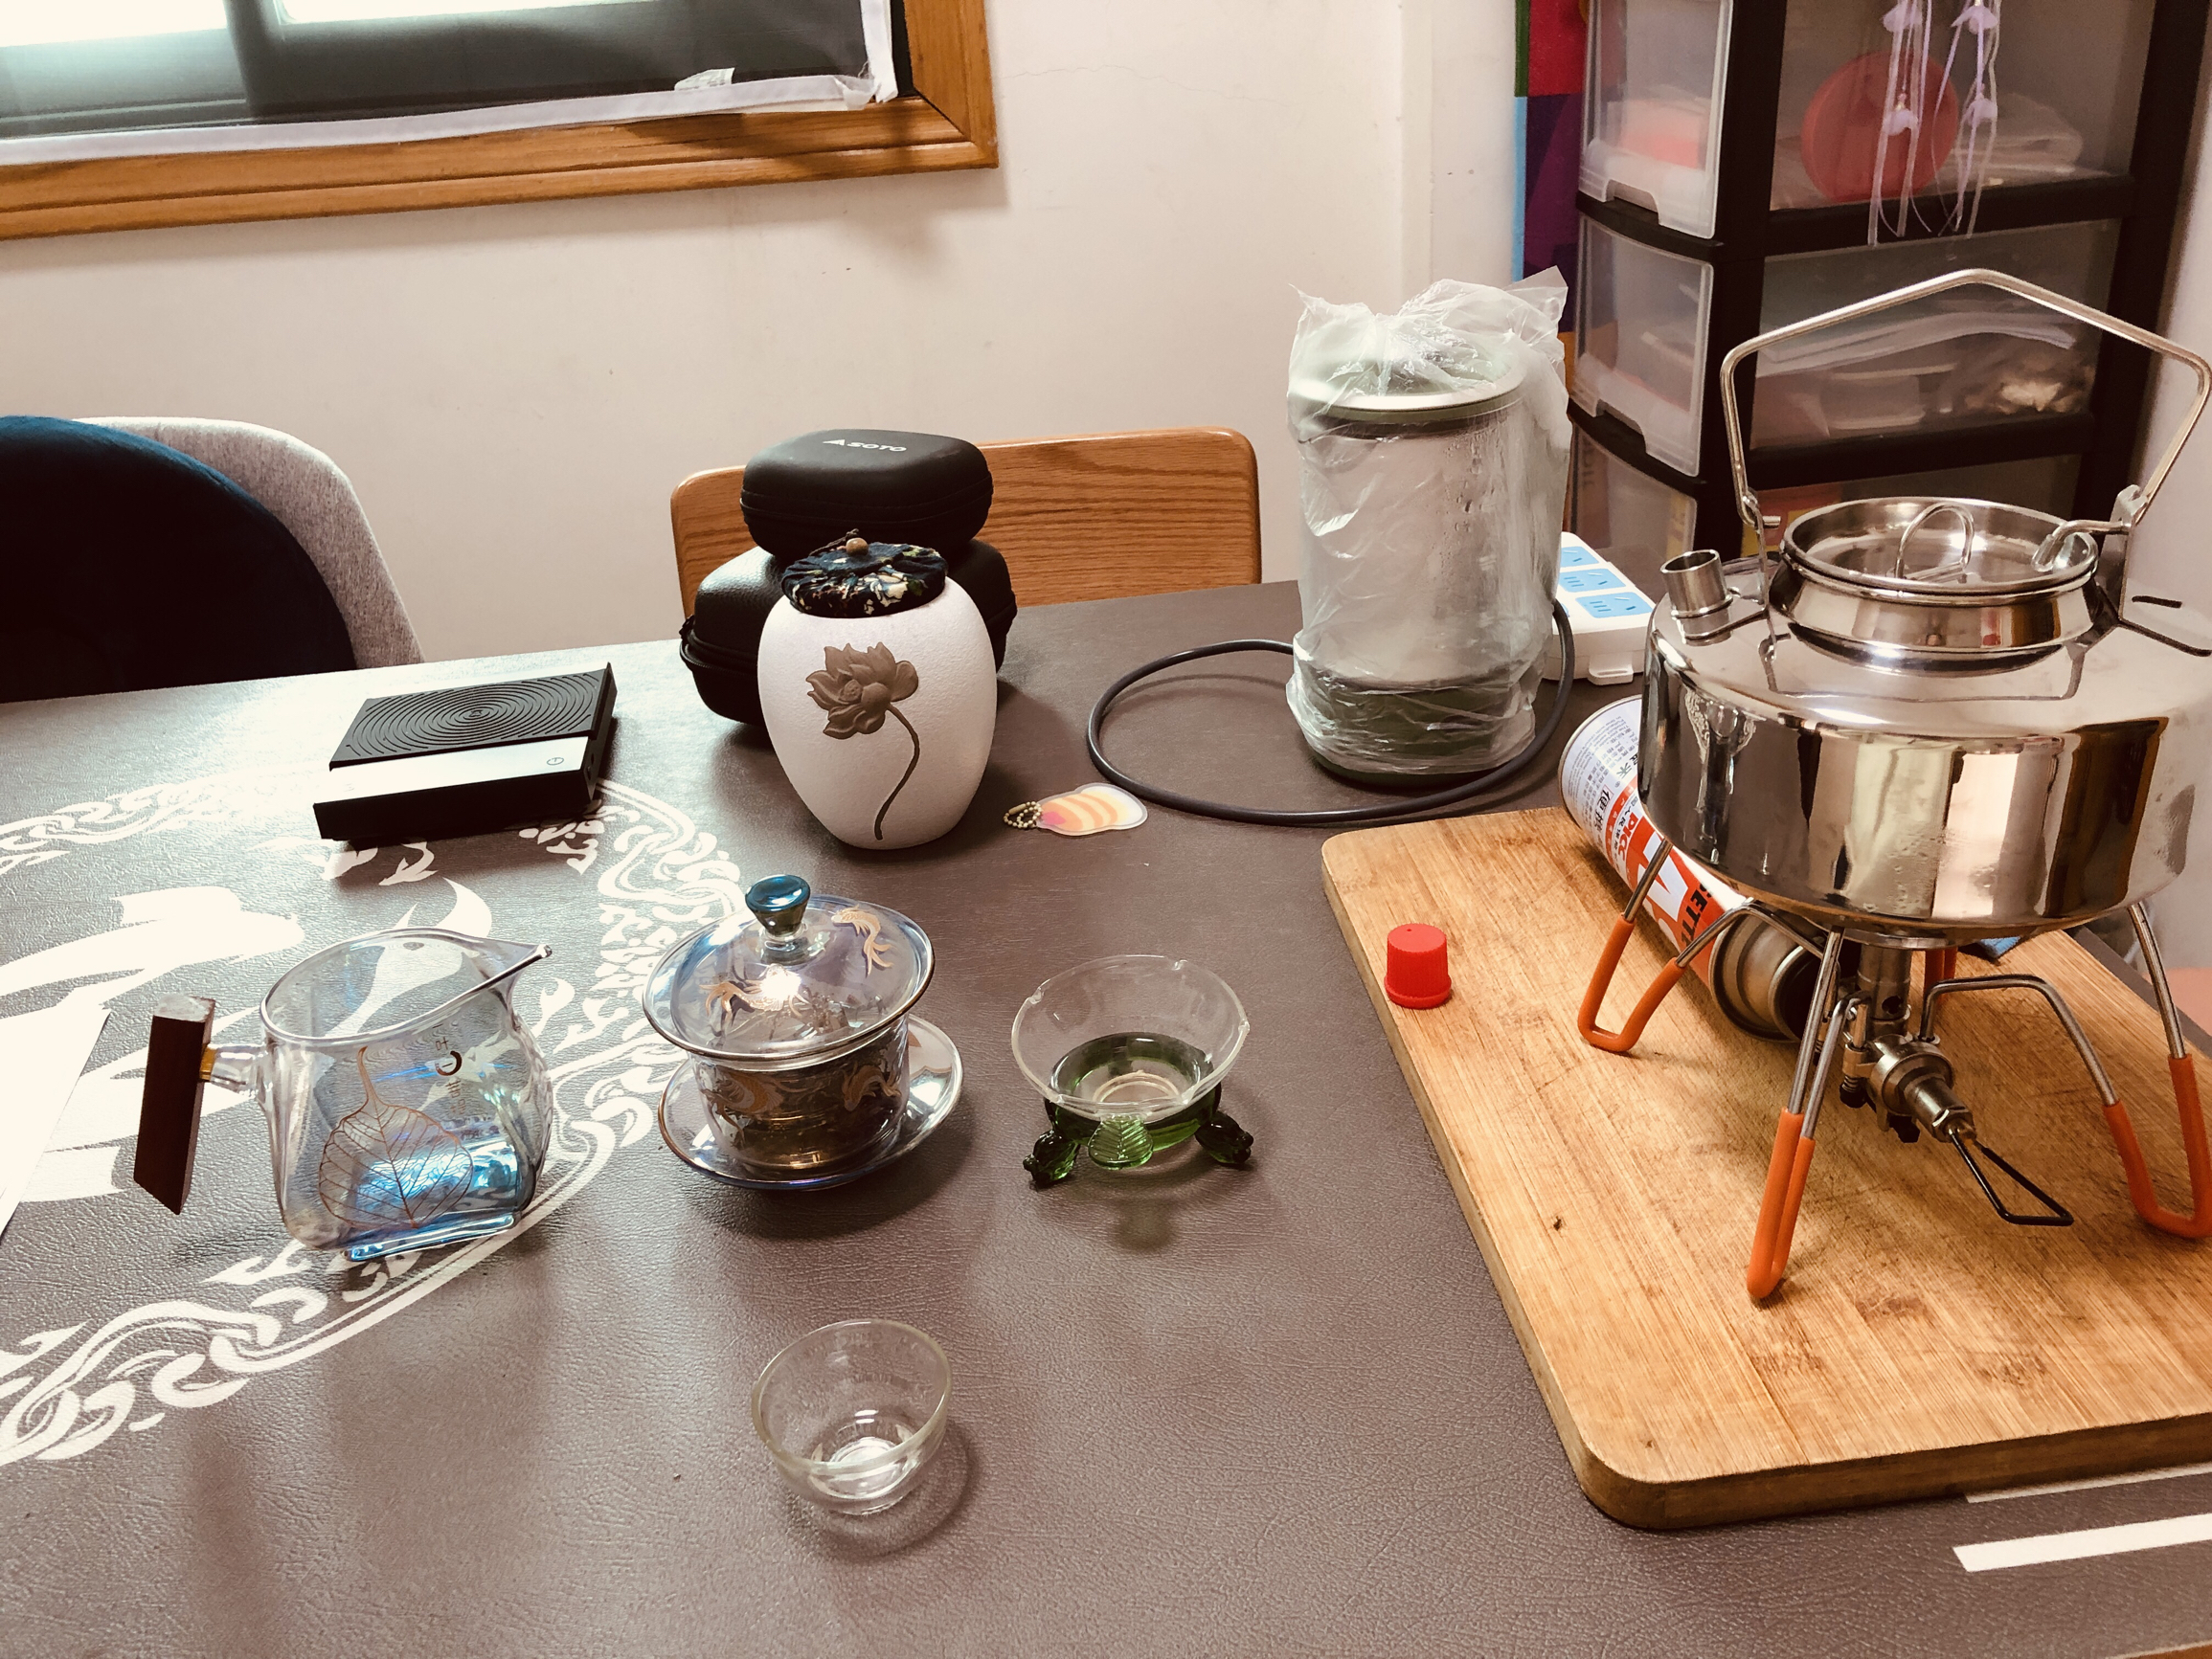 冬天天气冷 那就呆在家里喝喝茶 不到外面去露营了 用汽罐烧火来煮茶